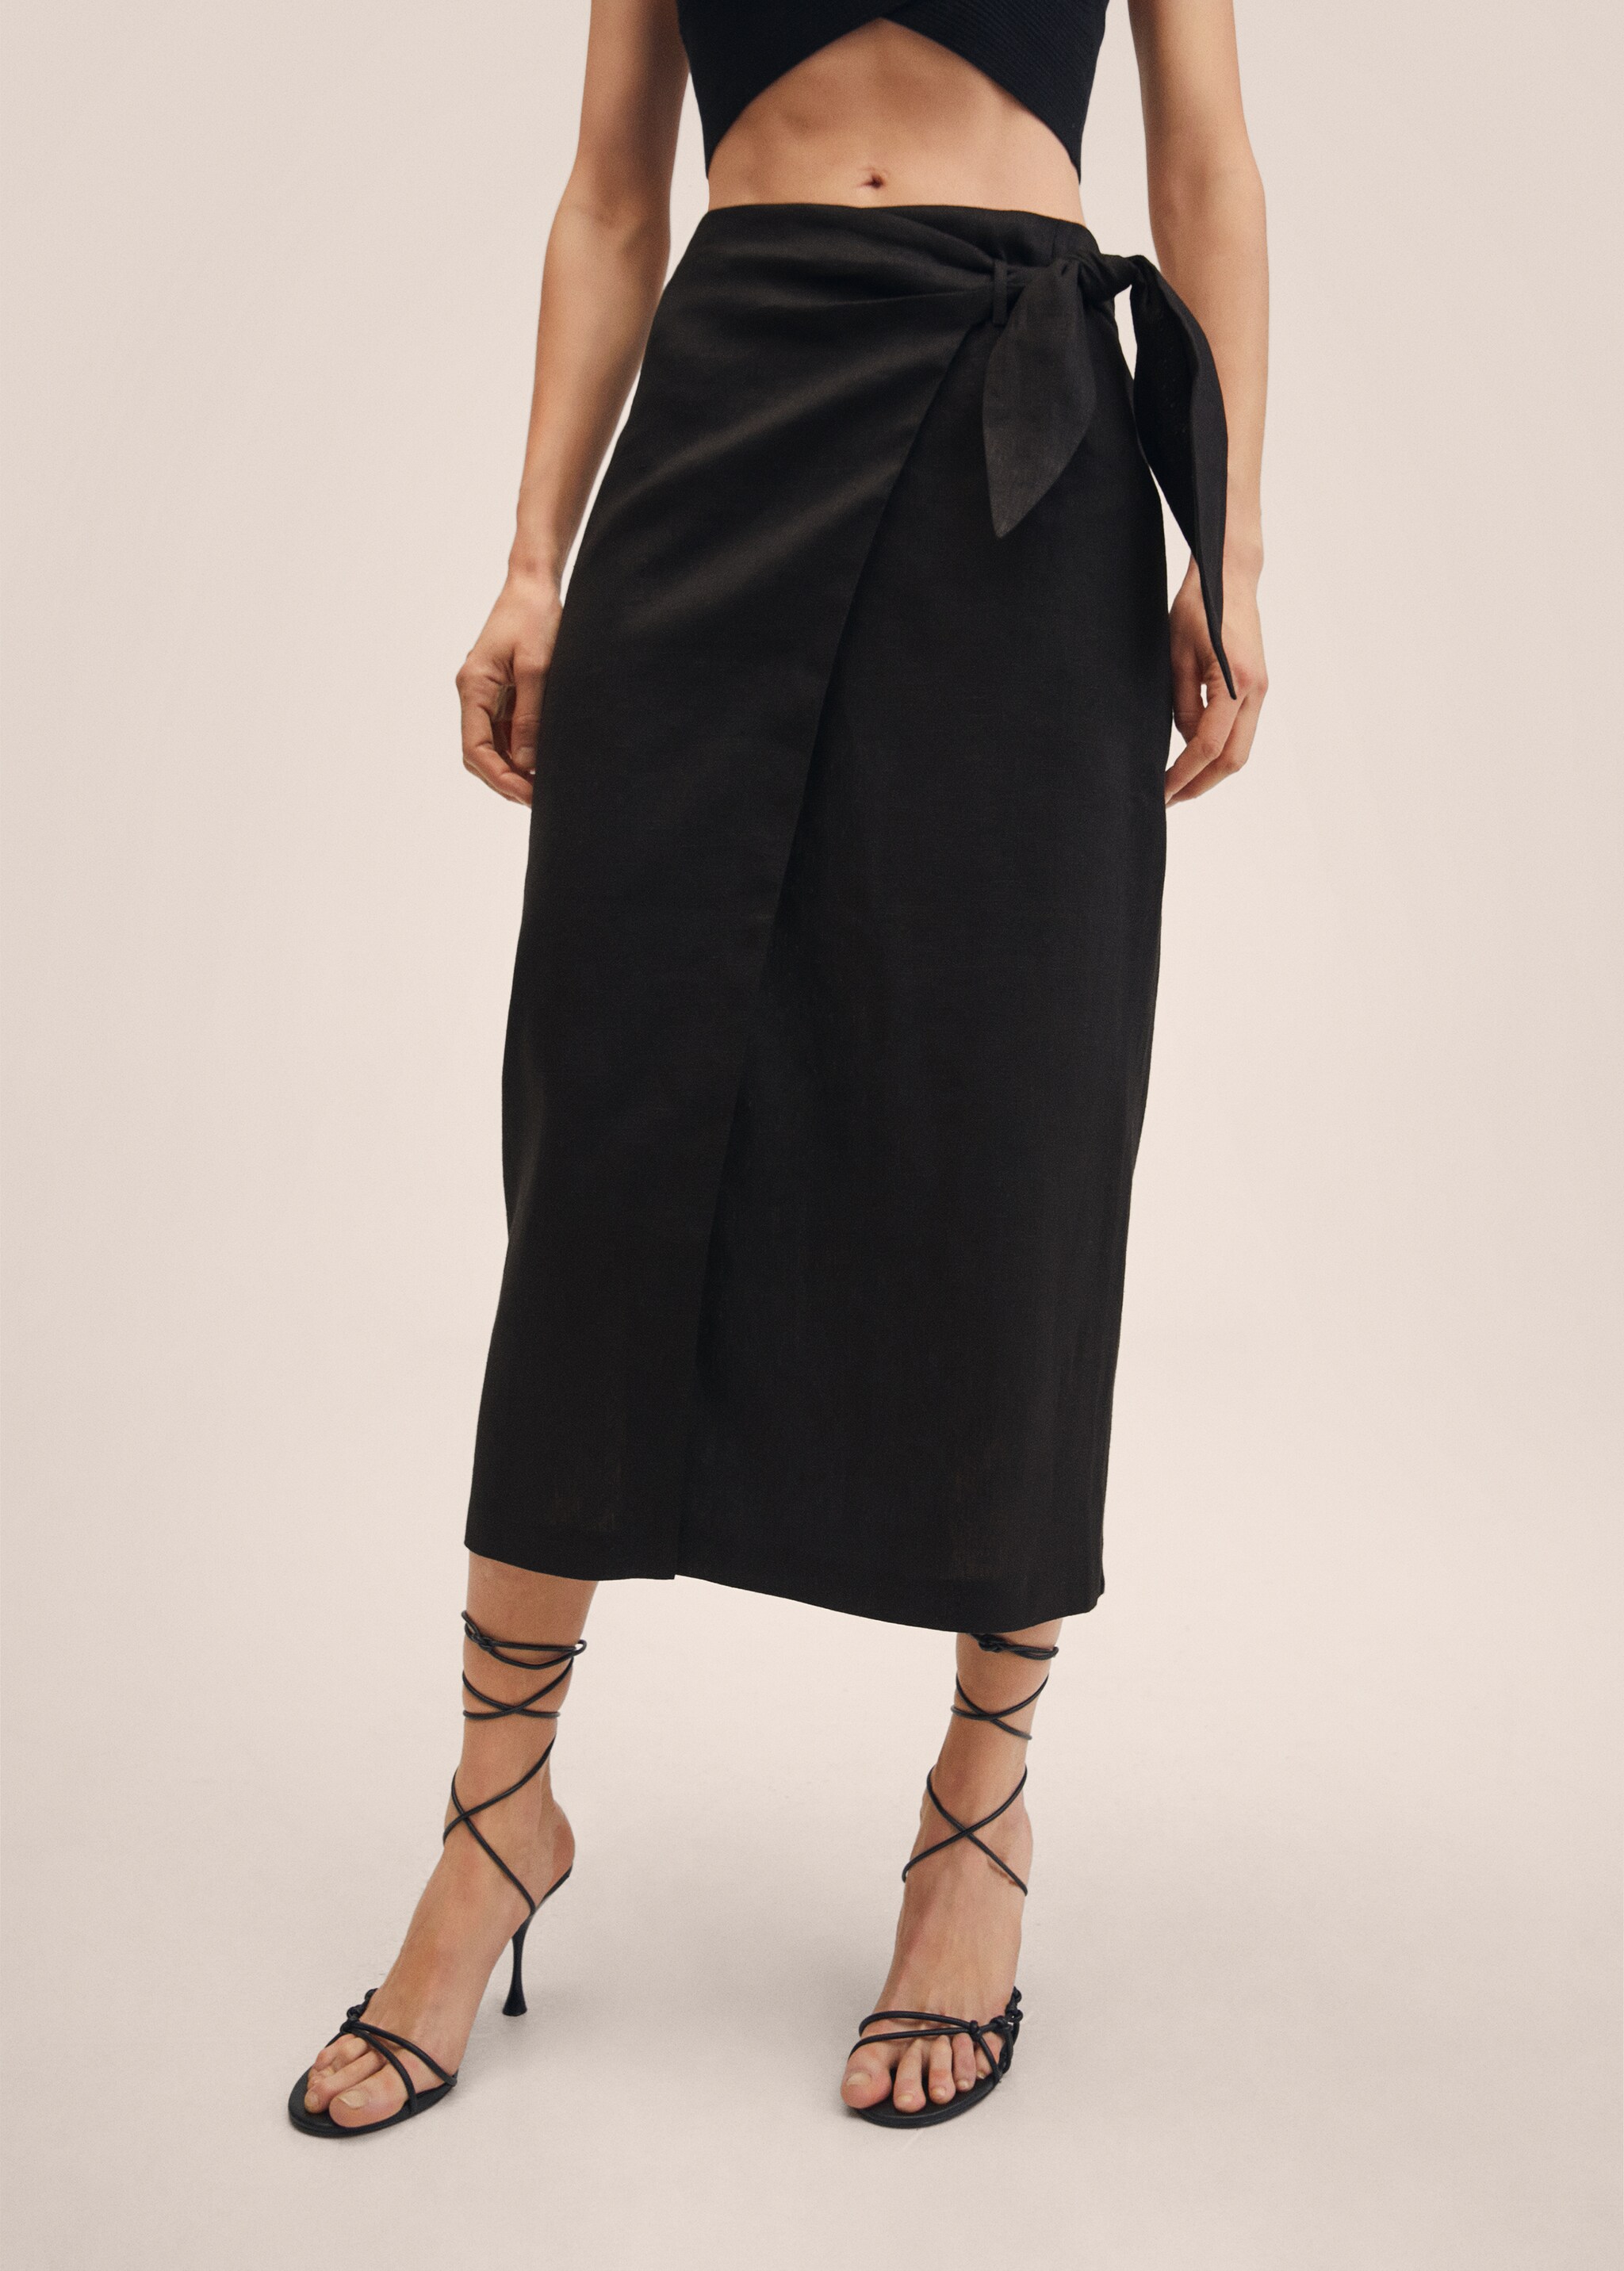 100% linen skirt - Medium plane